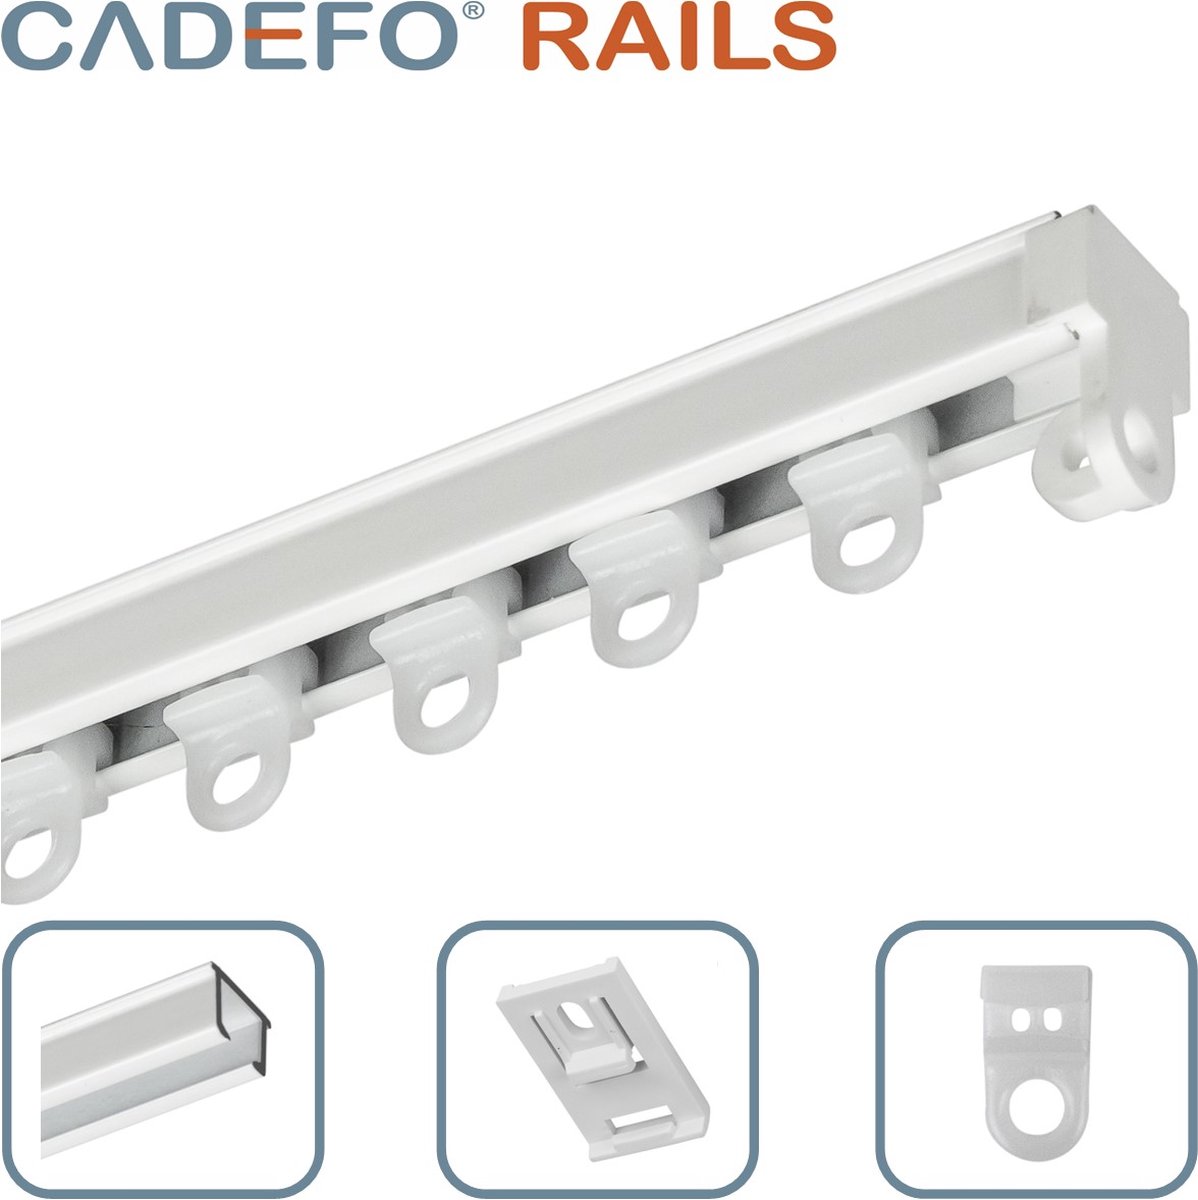 CADEFO RAILS (351 - 400 cm) Gordijnrails - Compleet op maat! - UIT 1 STUK - Leverbaar tot 6 meter - Plafondbevestiging - Lengte 395 cm